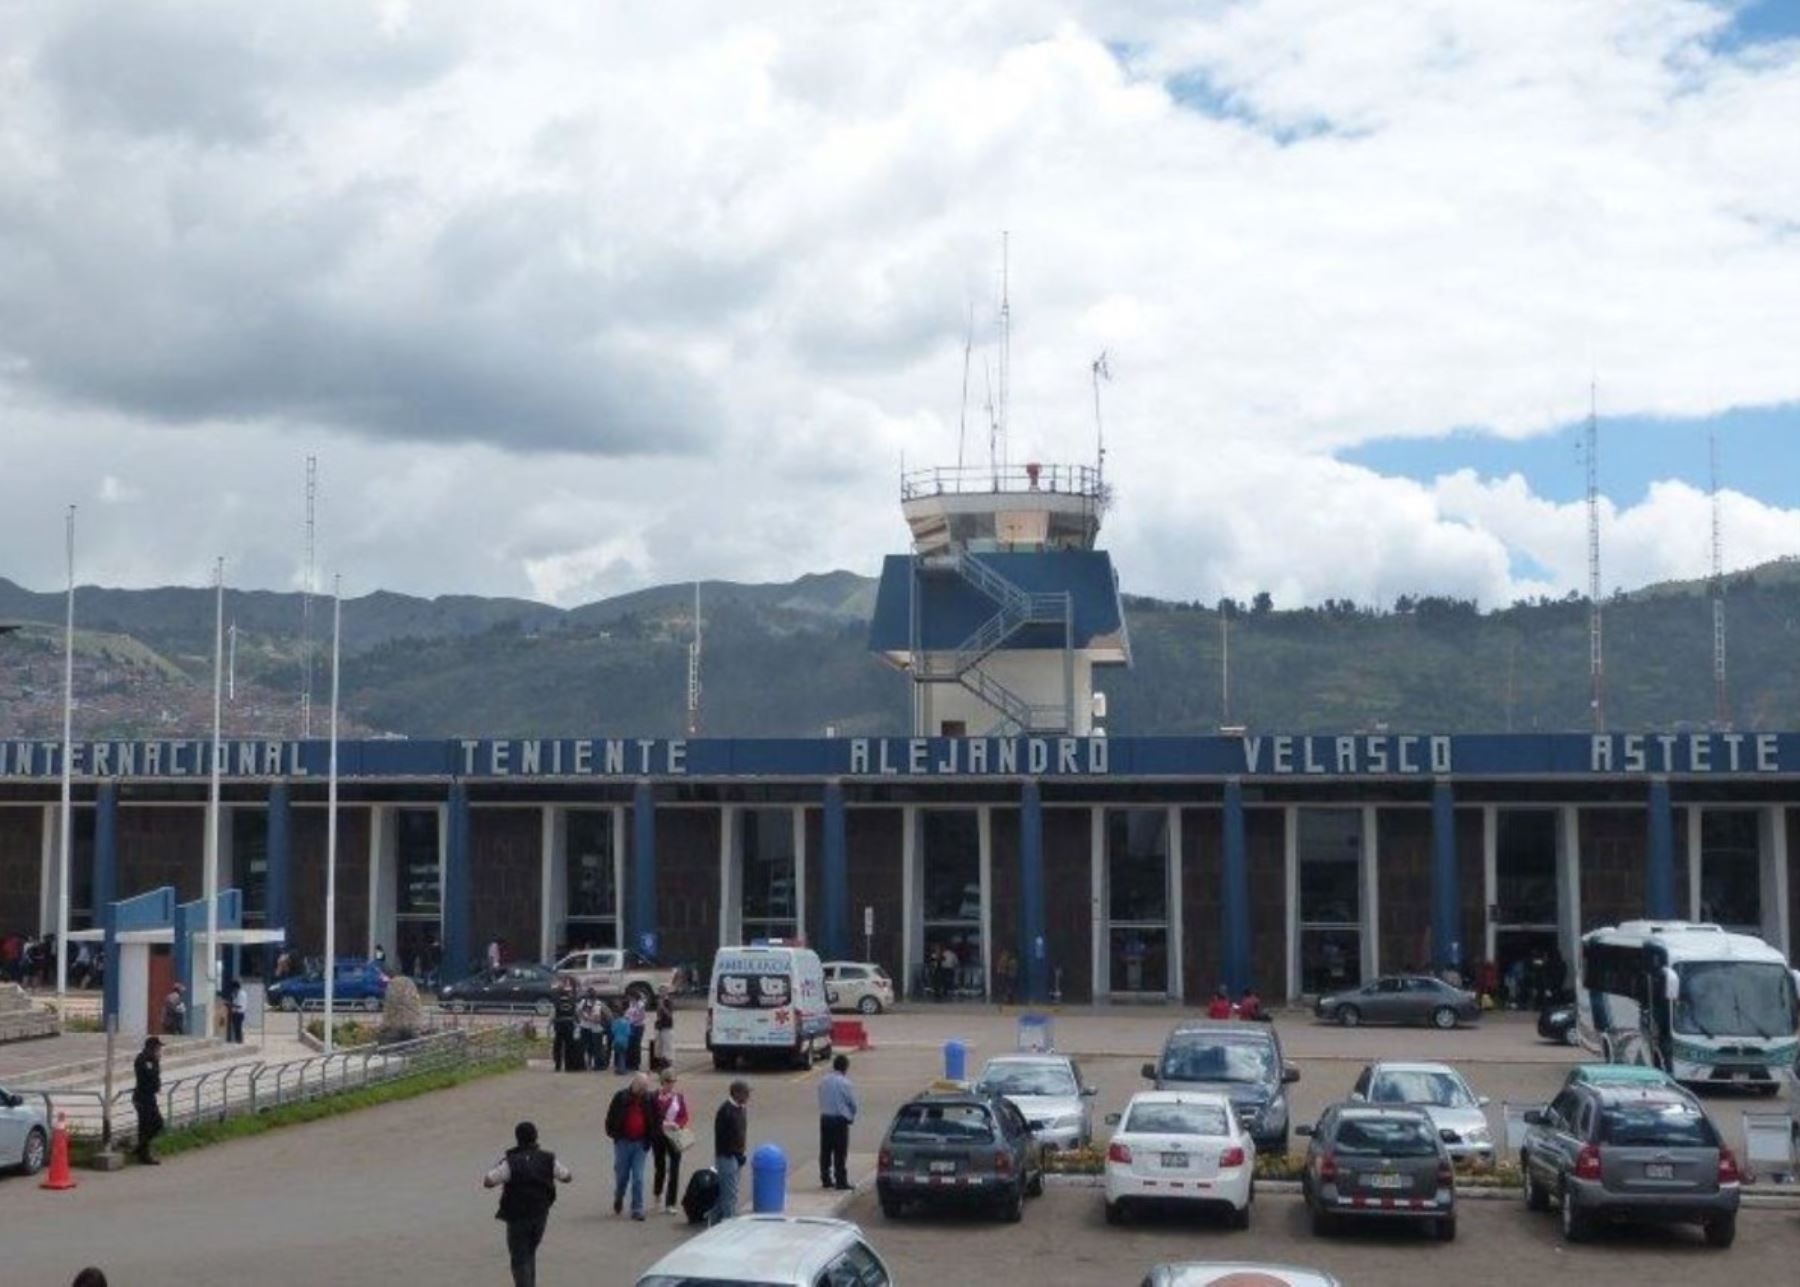 El aeropuerto Teniente Alejandro Velasco Astete de Cusco volverá a recibir vuelos internacionales a partir de este viernes 1 de julio. Las naves llegarán procedentes de Santiago de Chile. Foto: ANDINA/Difusión.